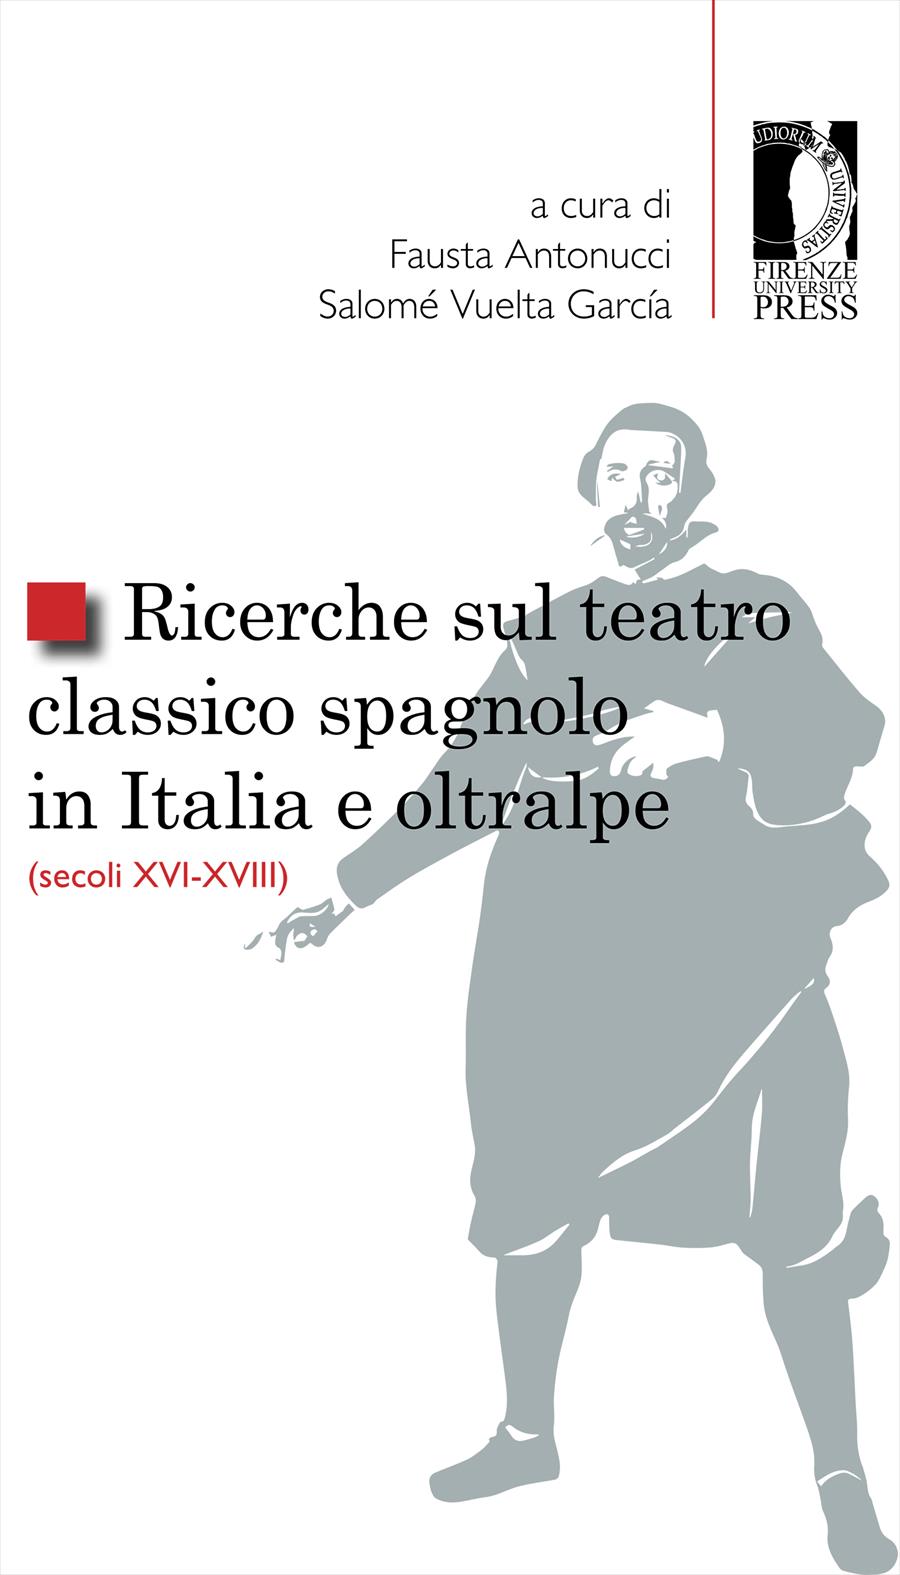 Ricerche sul teatro classico spagnolo in Italia e oltralpe (secoli XVI-XVIII)